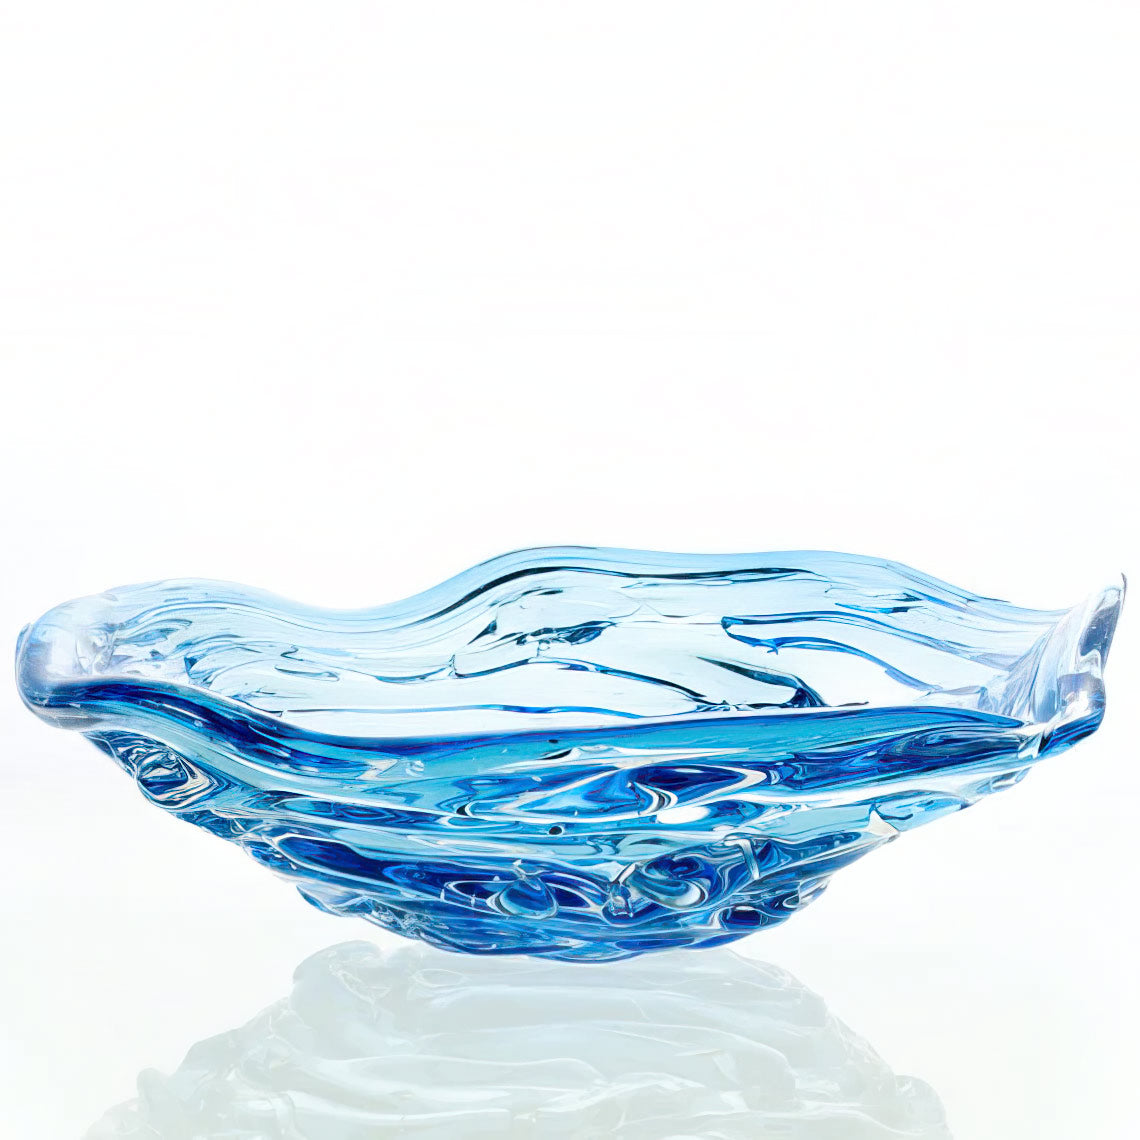 Vintage blue green aqua art glass swirl pattern glass art dish bowl